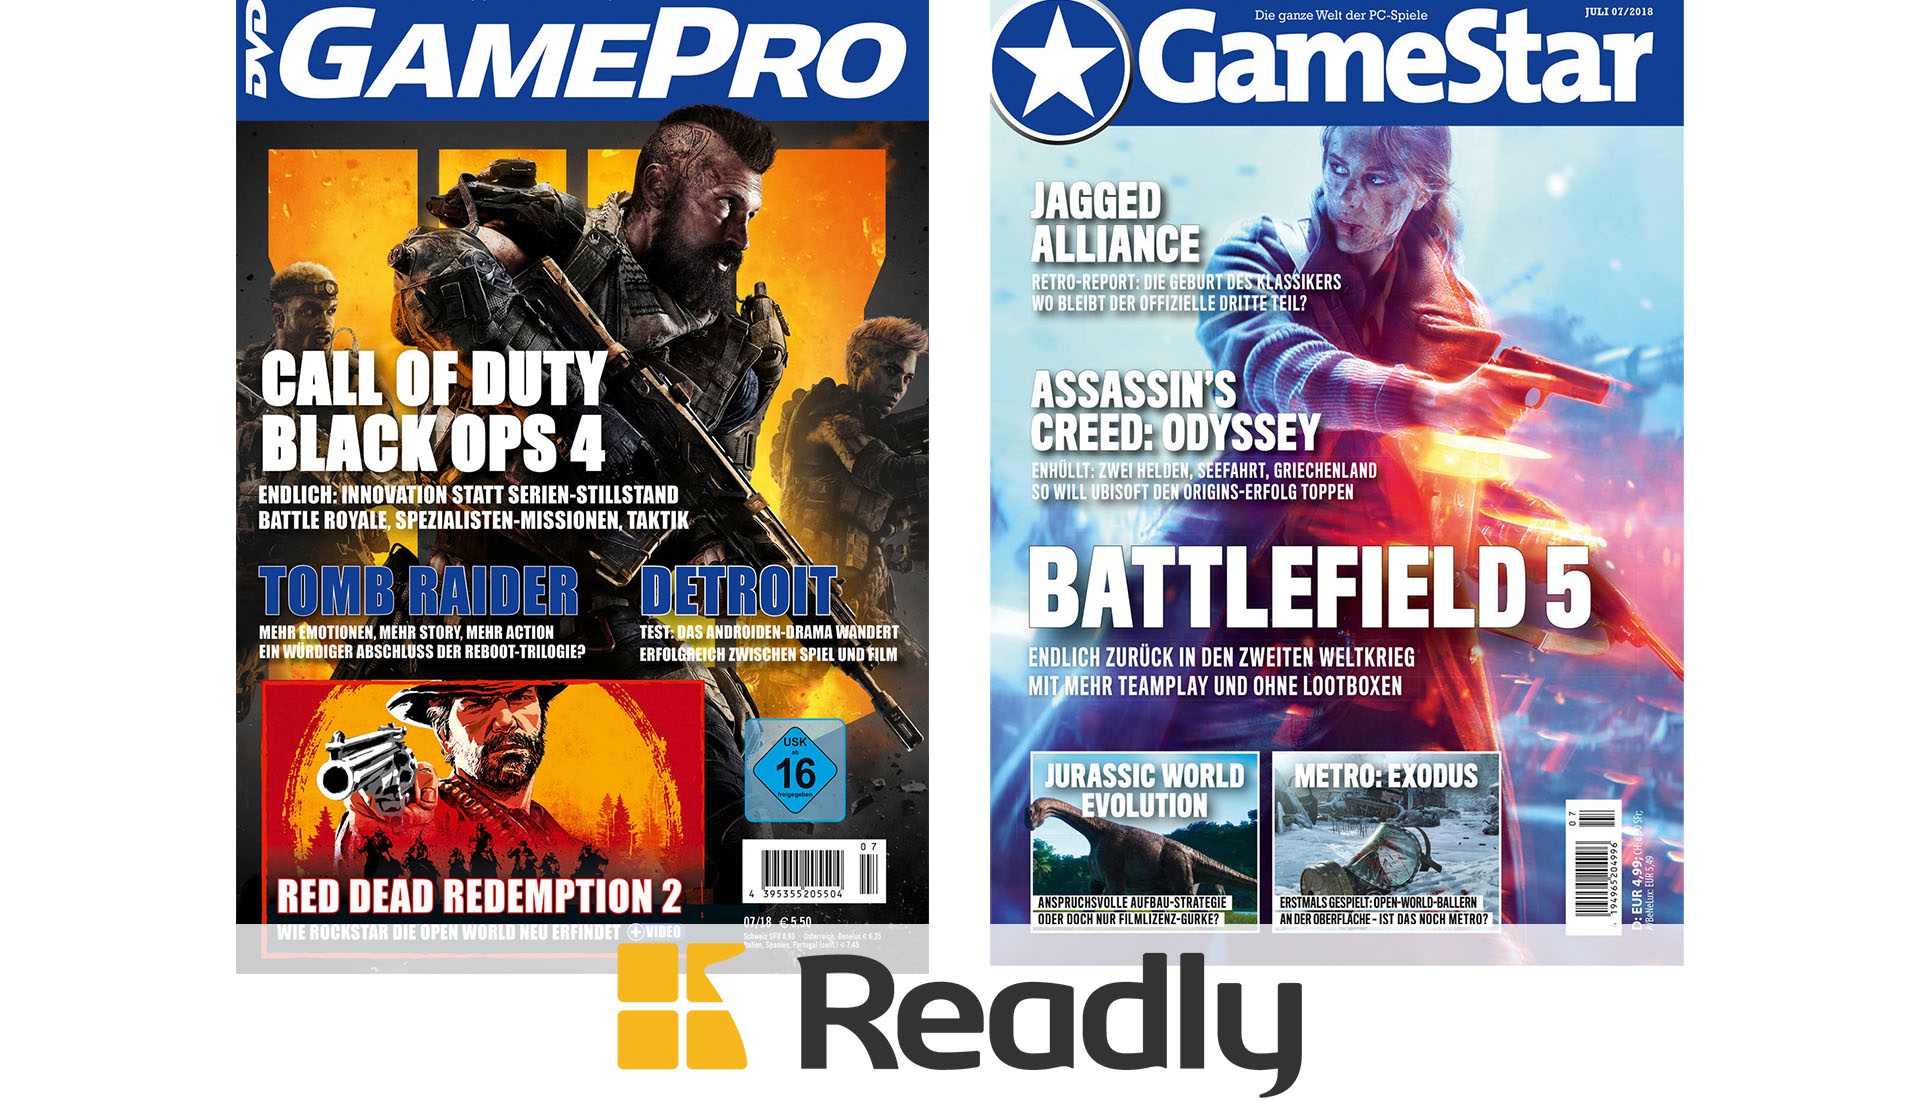 3 Monate Readly 9,99 nur lesen Euro und GameStar günstig - für GamePro Jetzt besonders